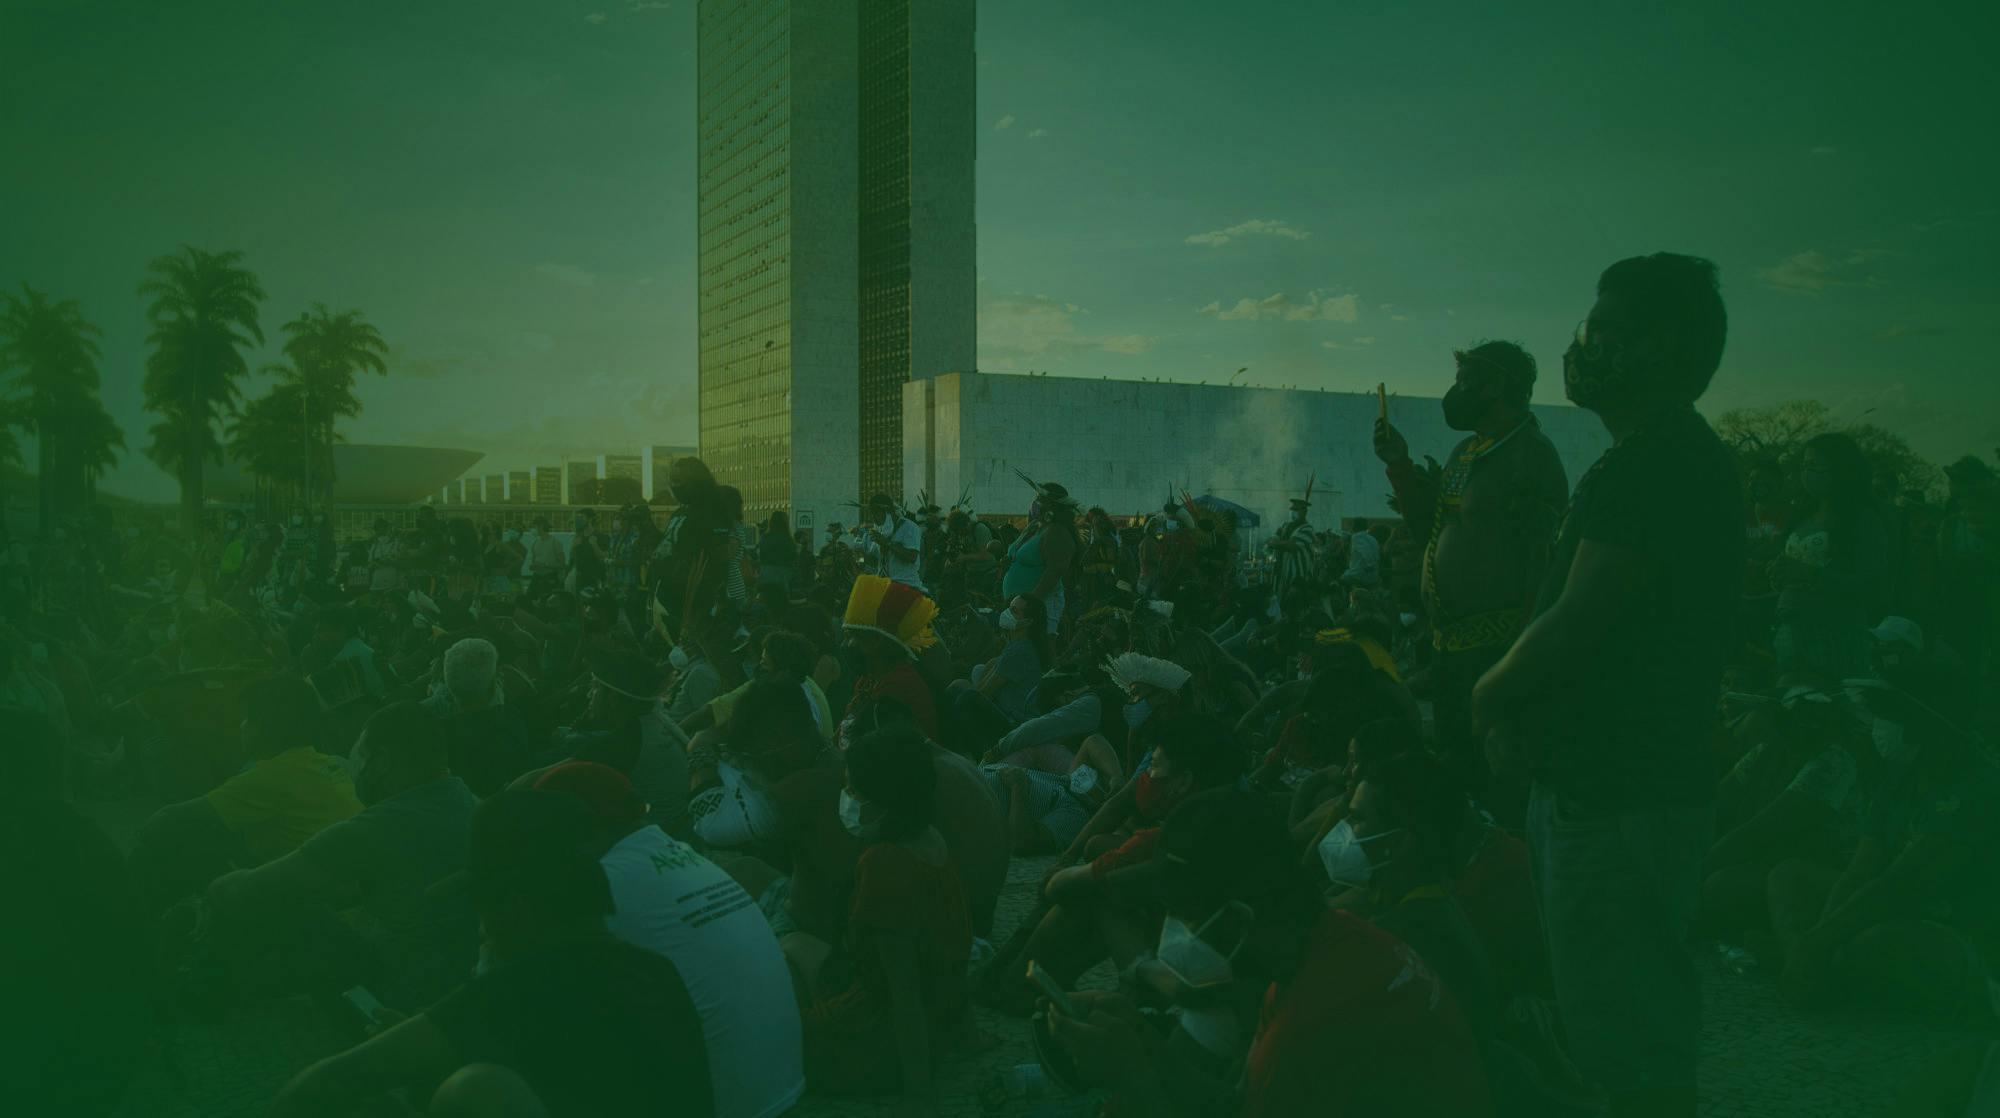 Grande grupo de Indígenas protestando em Brasilía